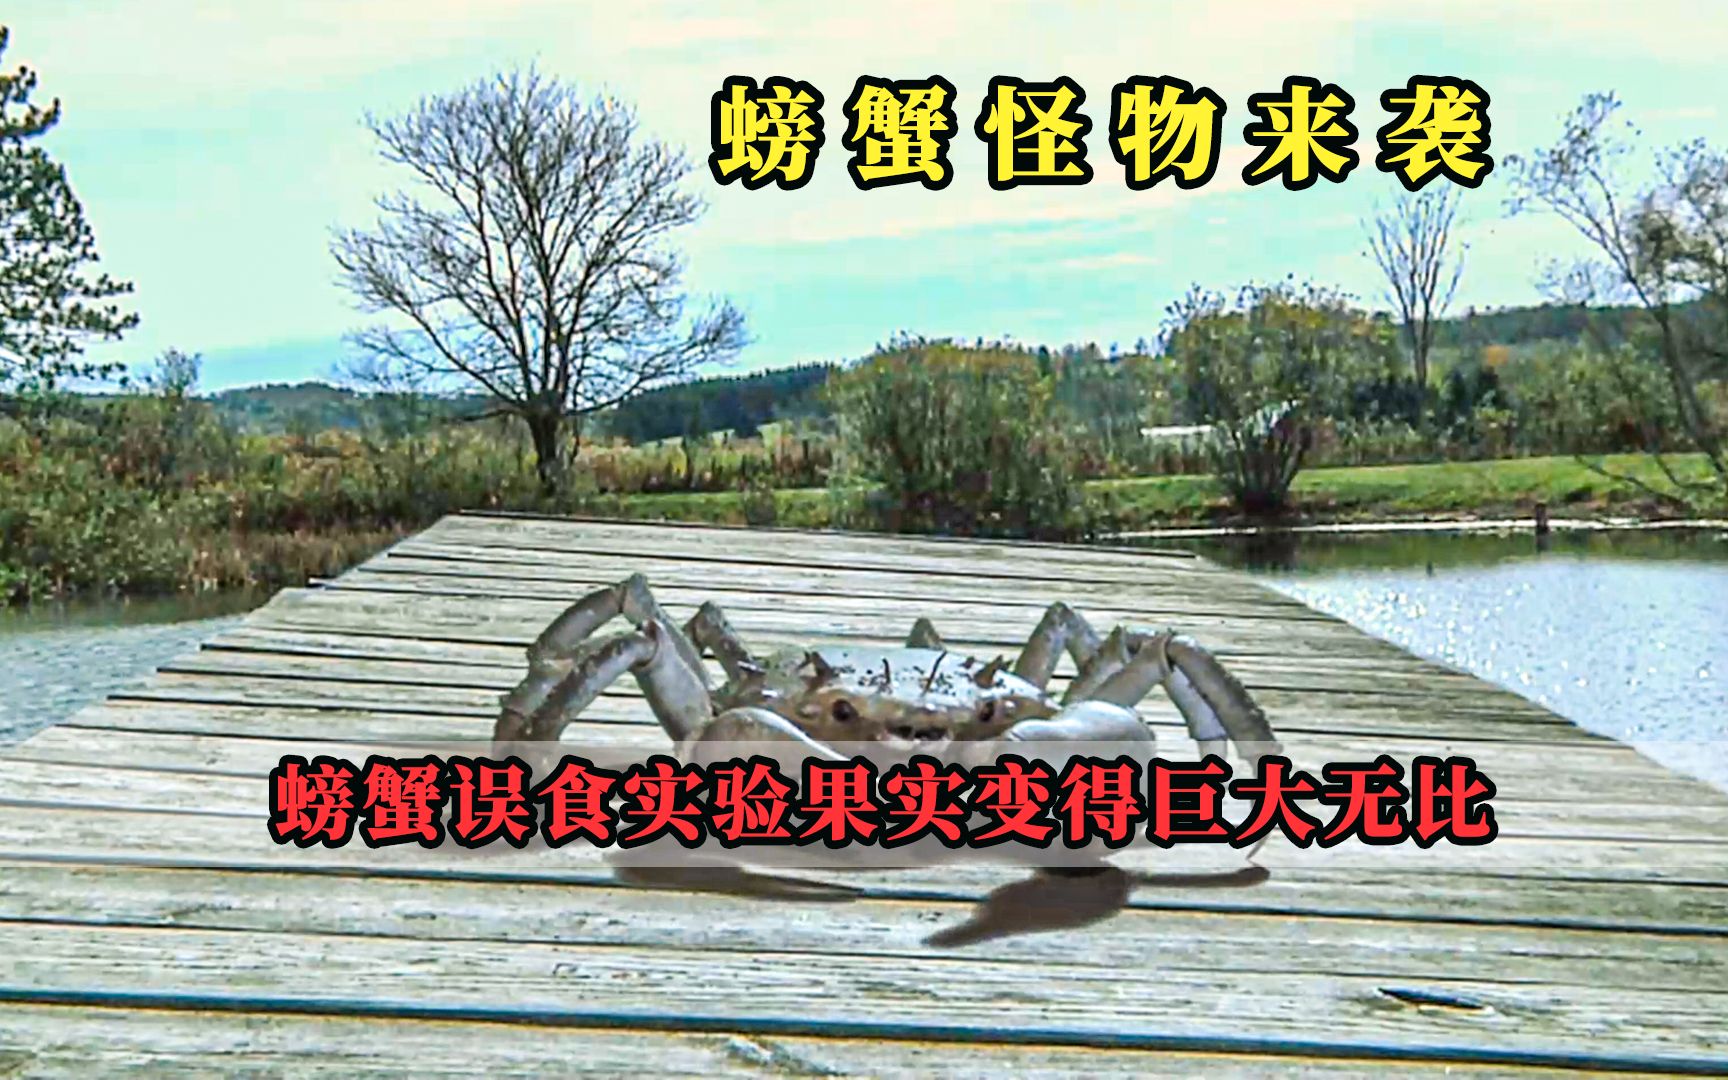 小歌说电影电影解说螃蟹怪物来袭女孩错给螃蟹吃了实验果实导致螃蟹变